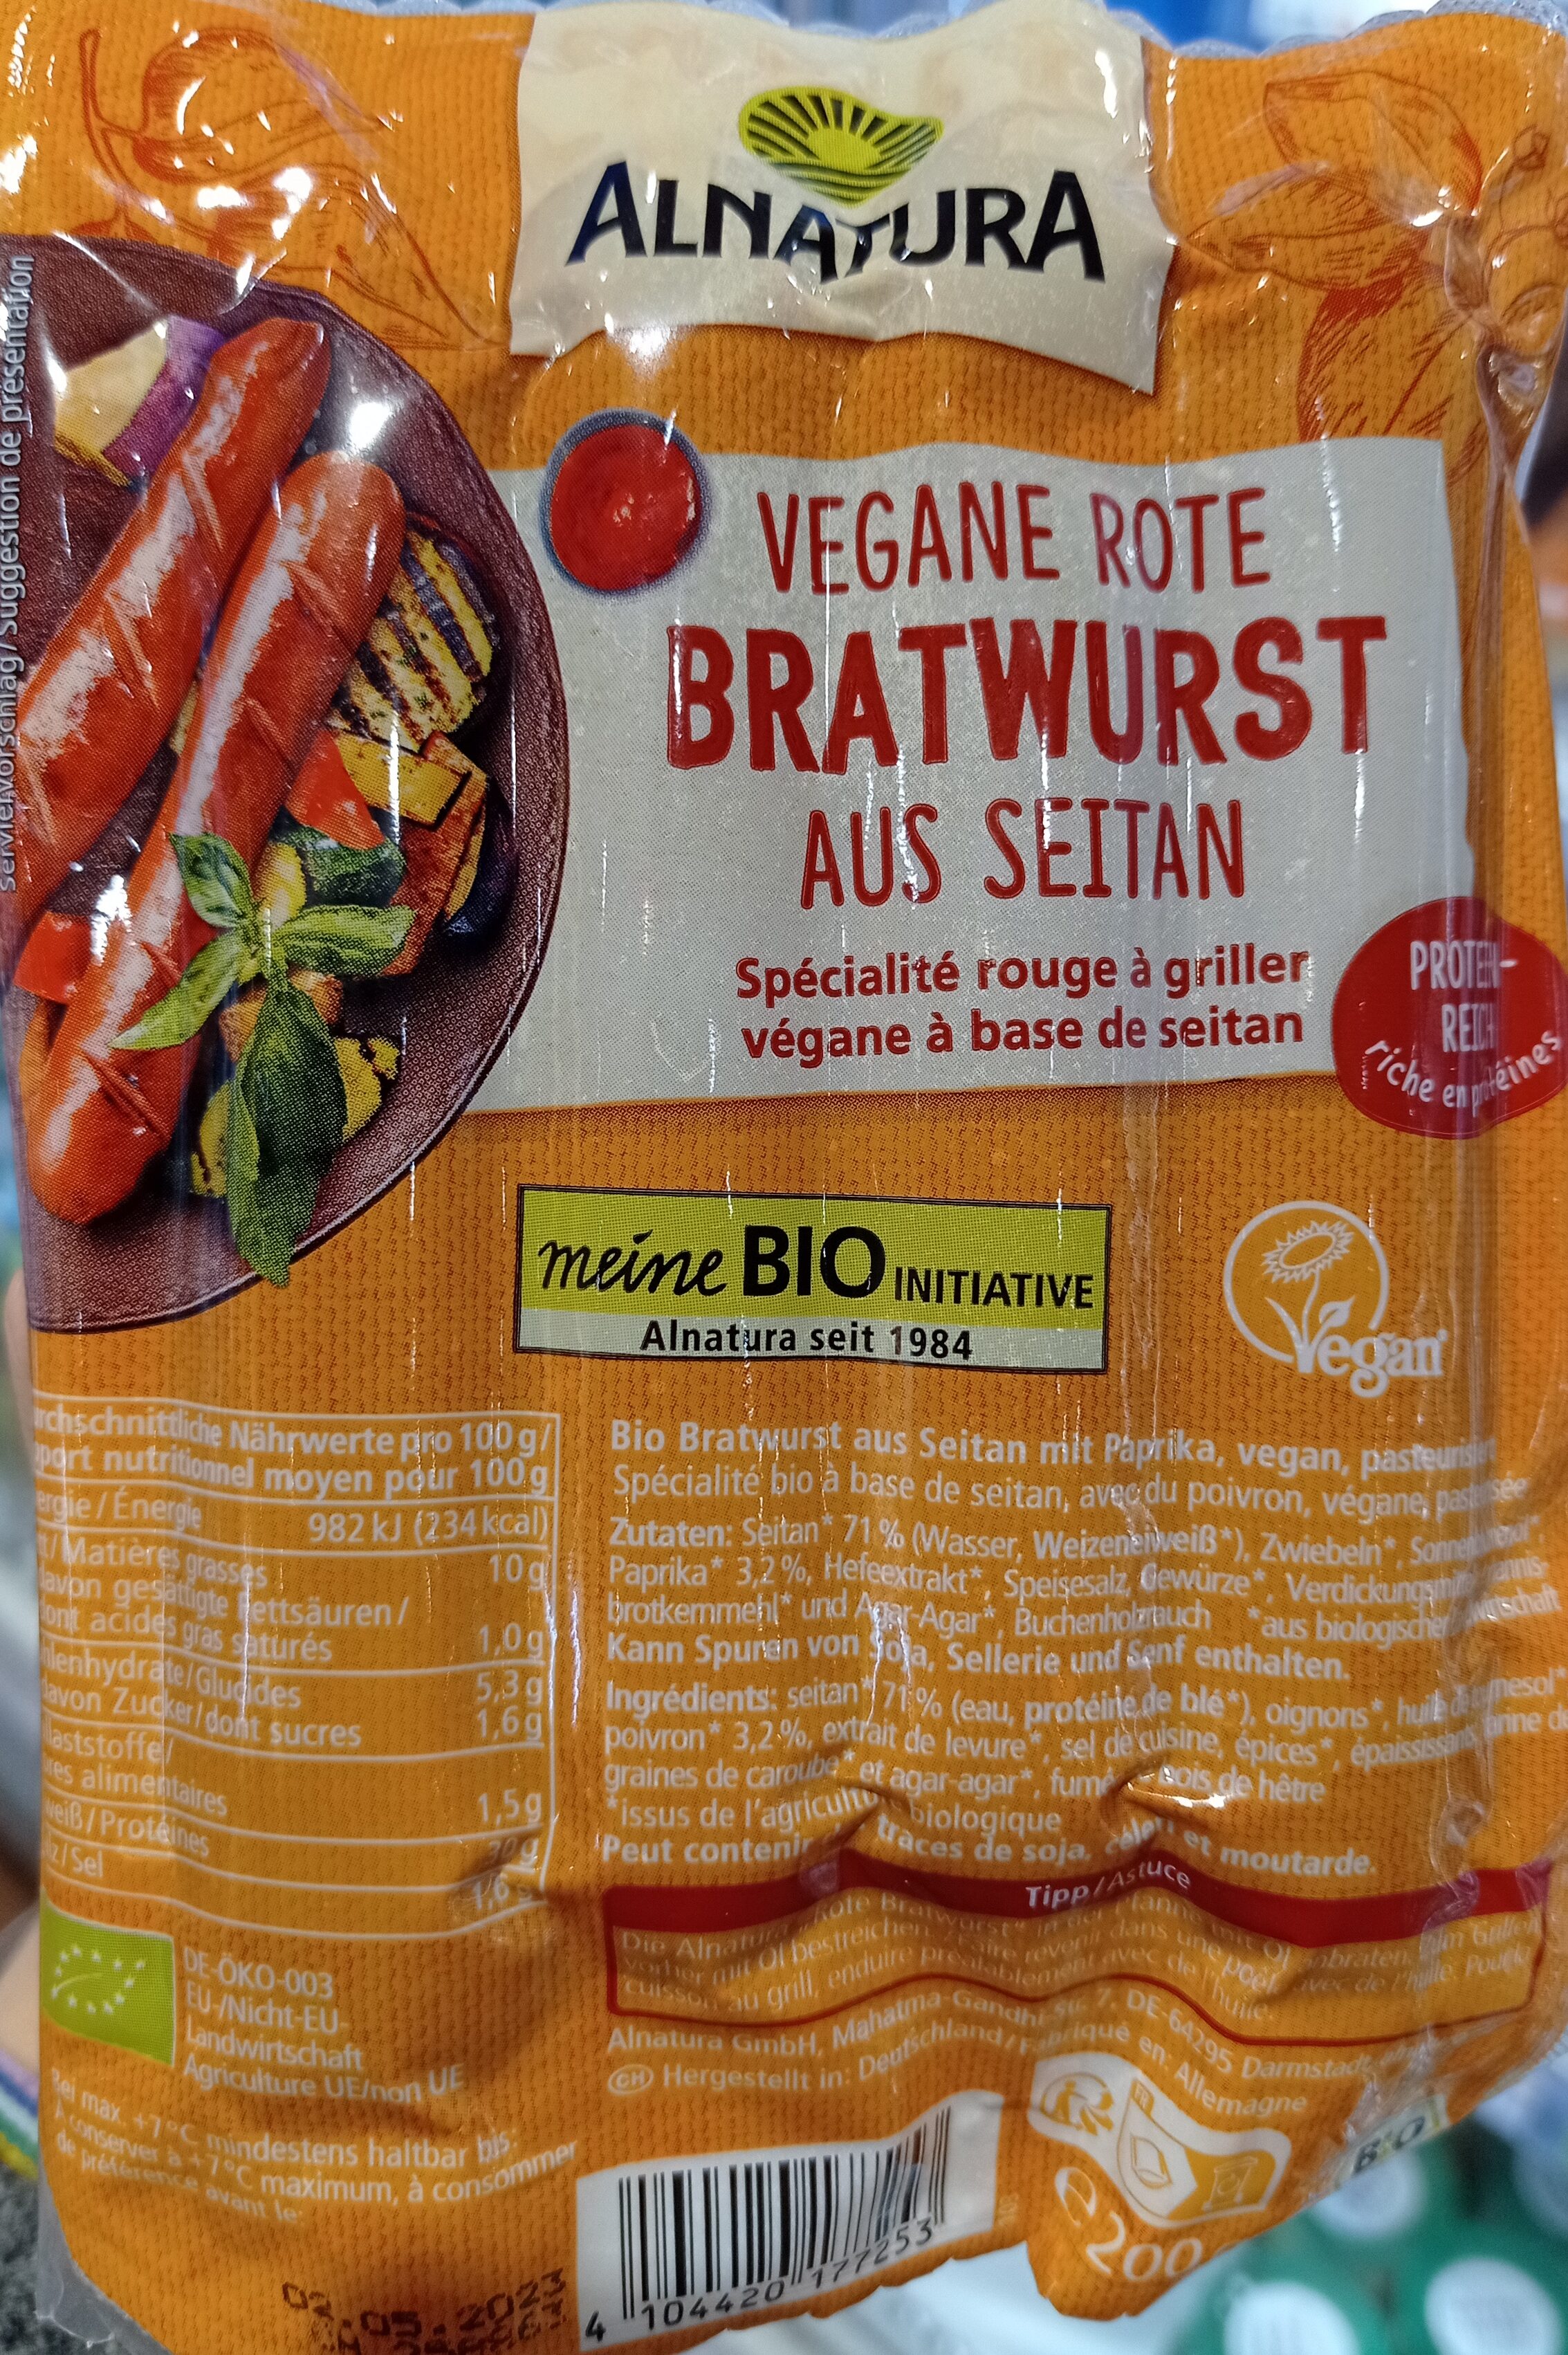 Vegan Rote Bratwurst aus seitan - Producto - de